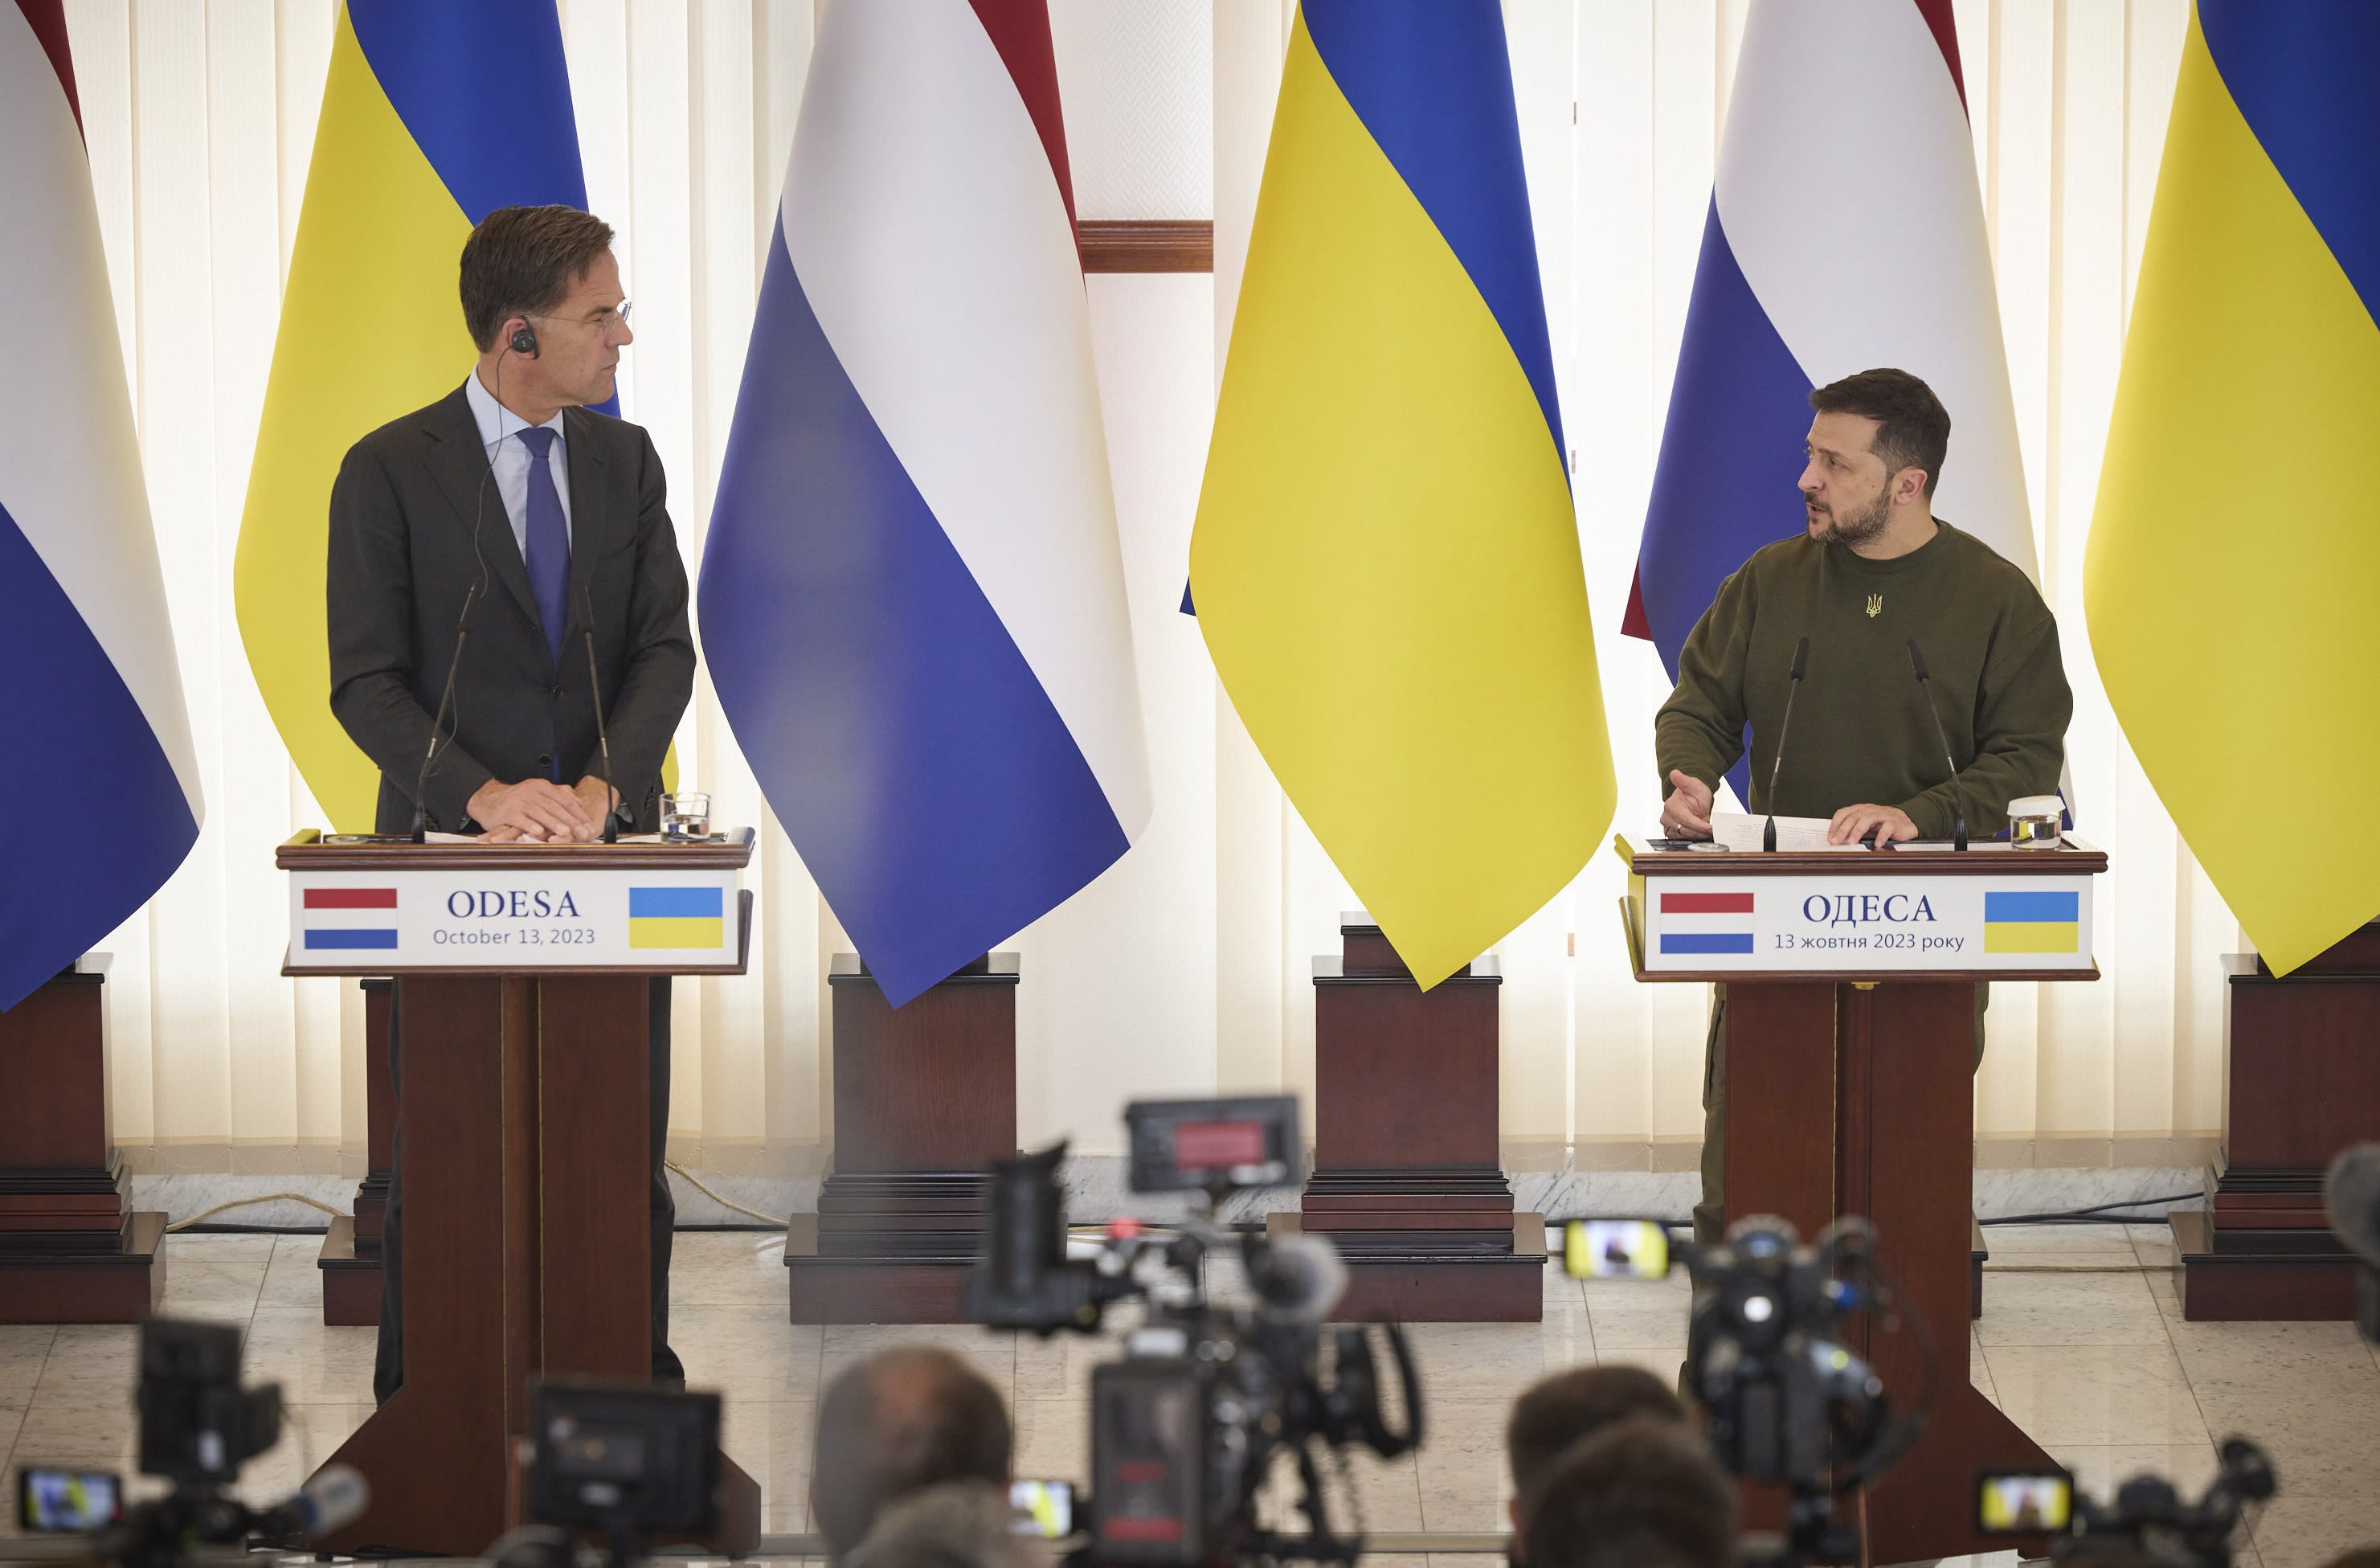 Flinke Kamermeerderheid belooft Oekraïne te blijven steunen: 'Zolang dat nodig is'